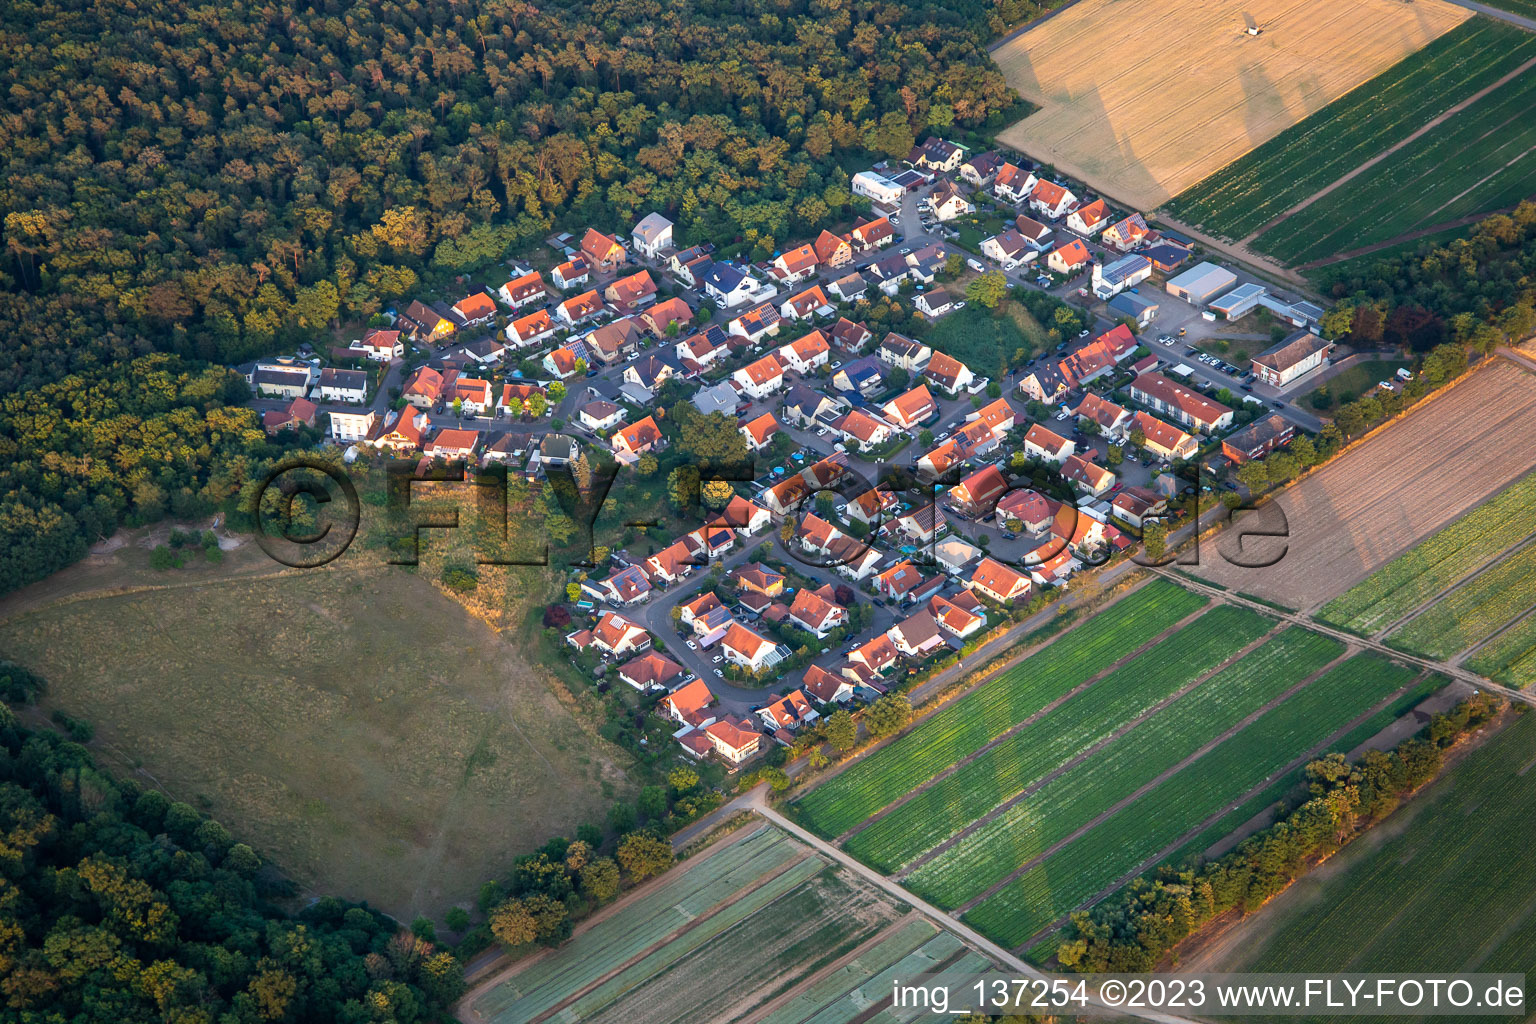 Buchenstr in Schwegenheim in the state Rhineland-Palatinate, Germany